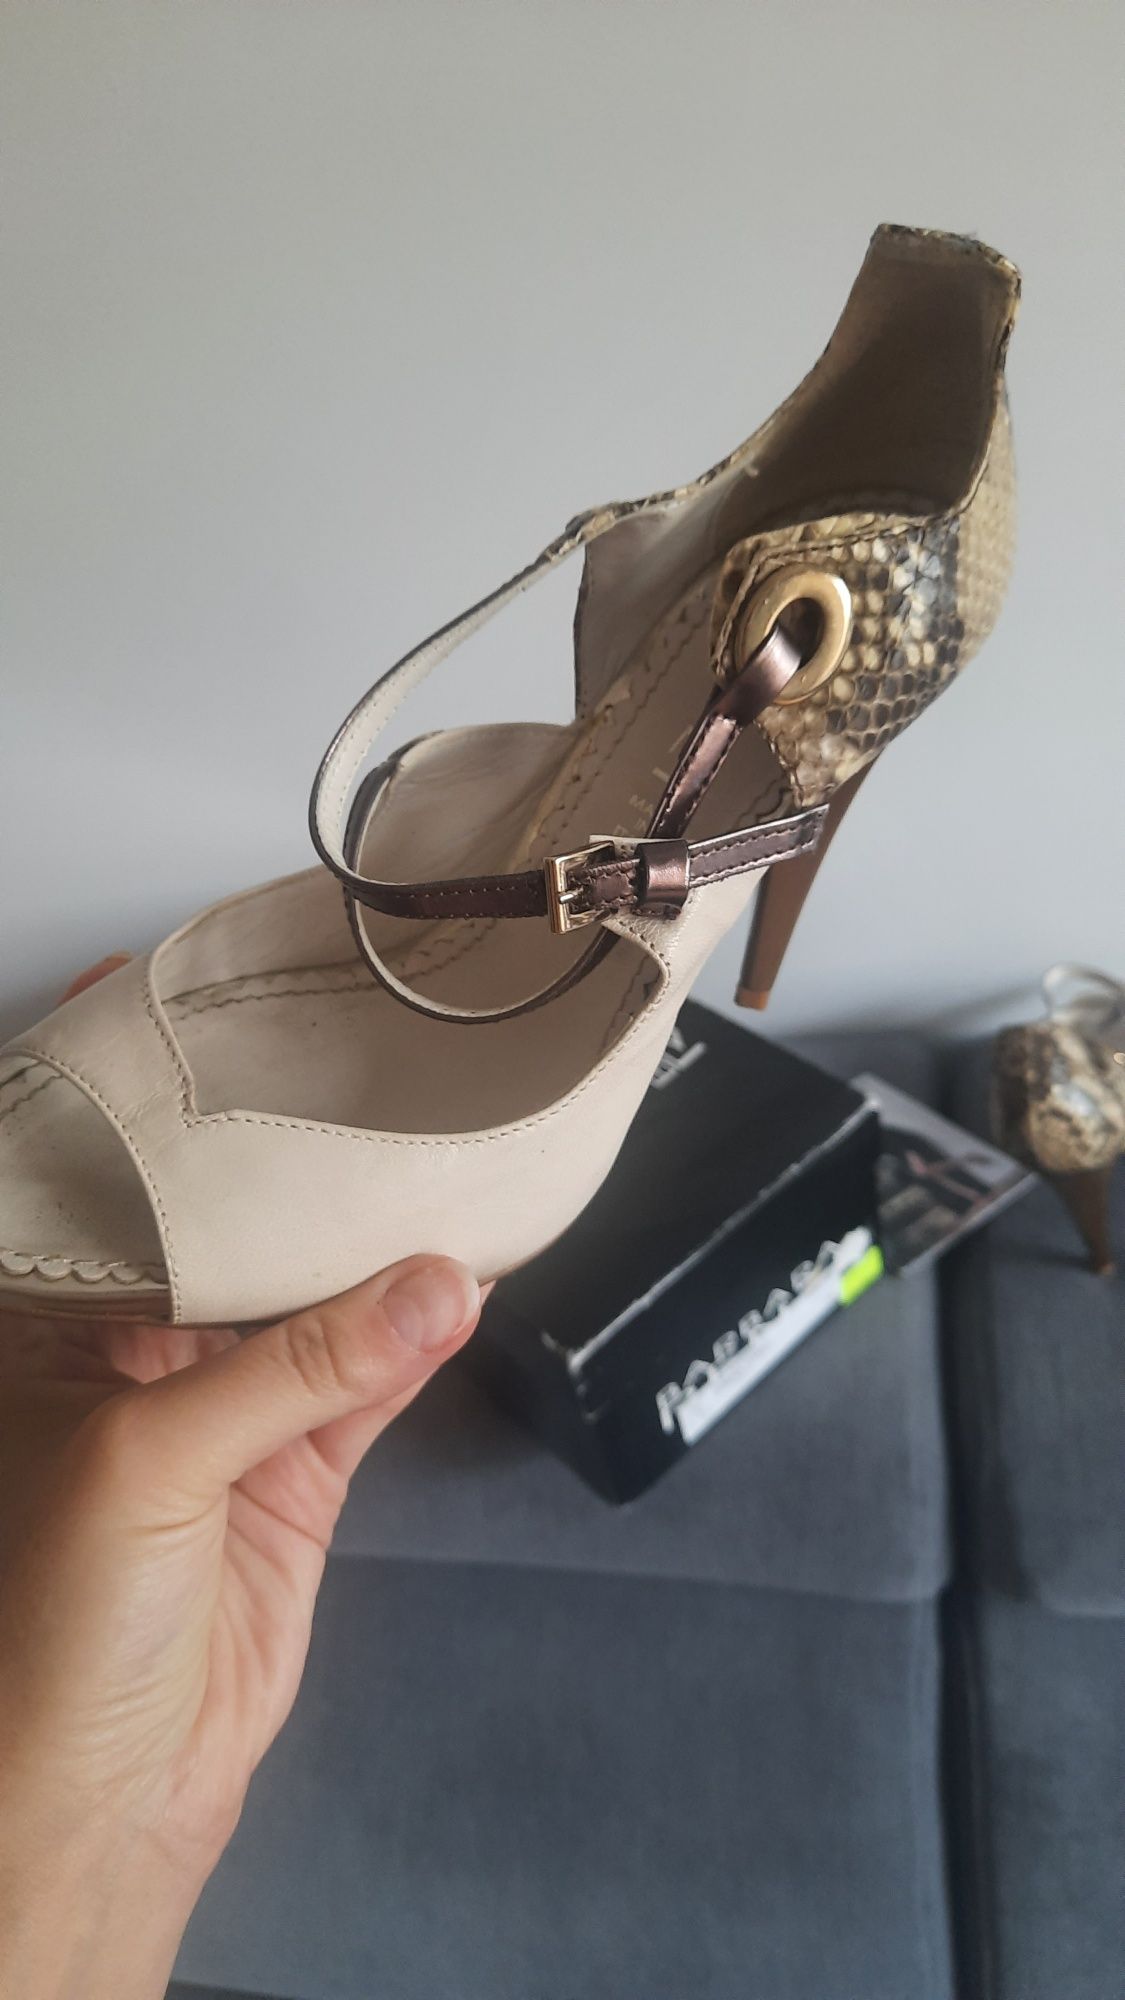 Barbara Renzi włoskie buty na obcasie nowe rozmiar 38